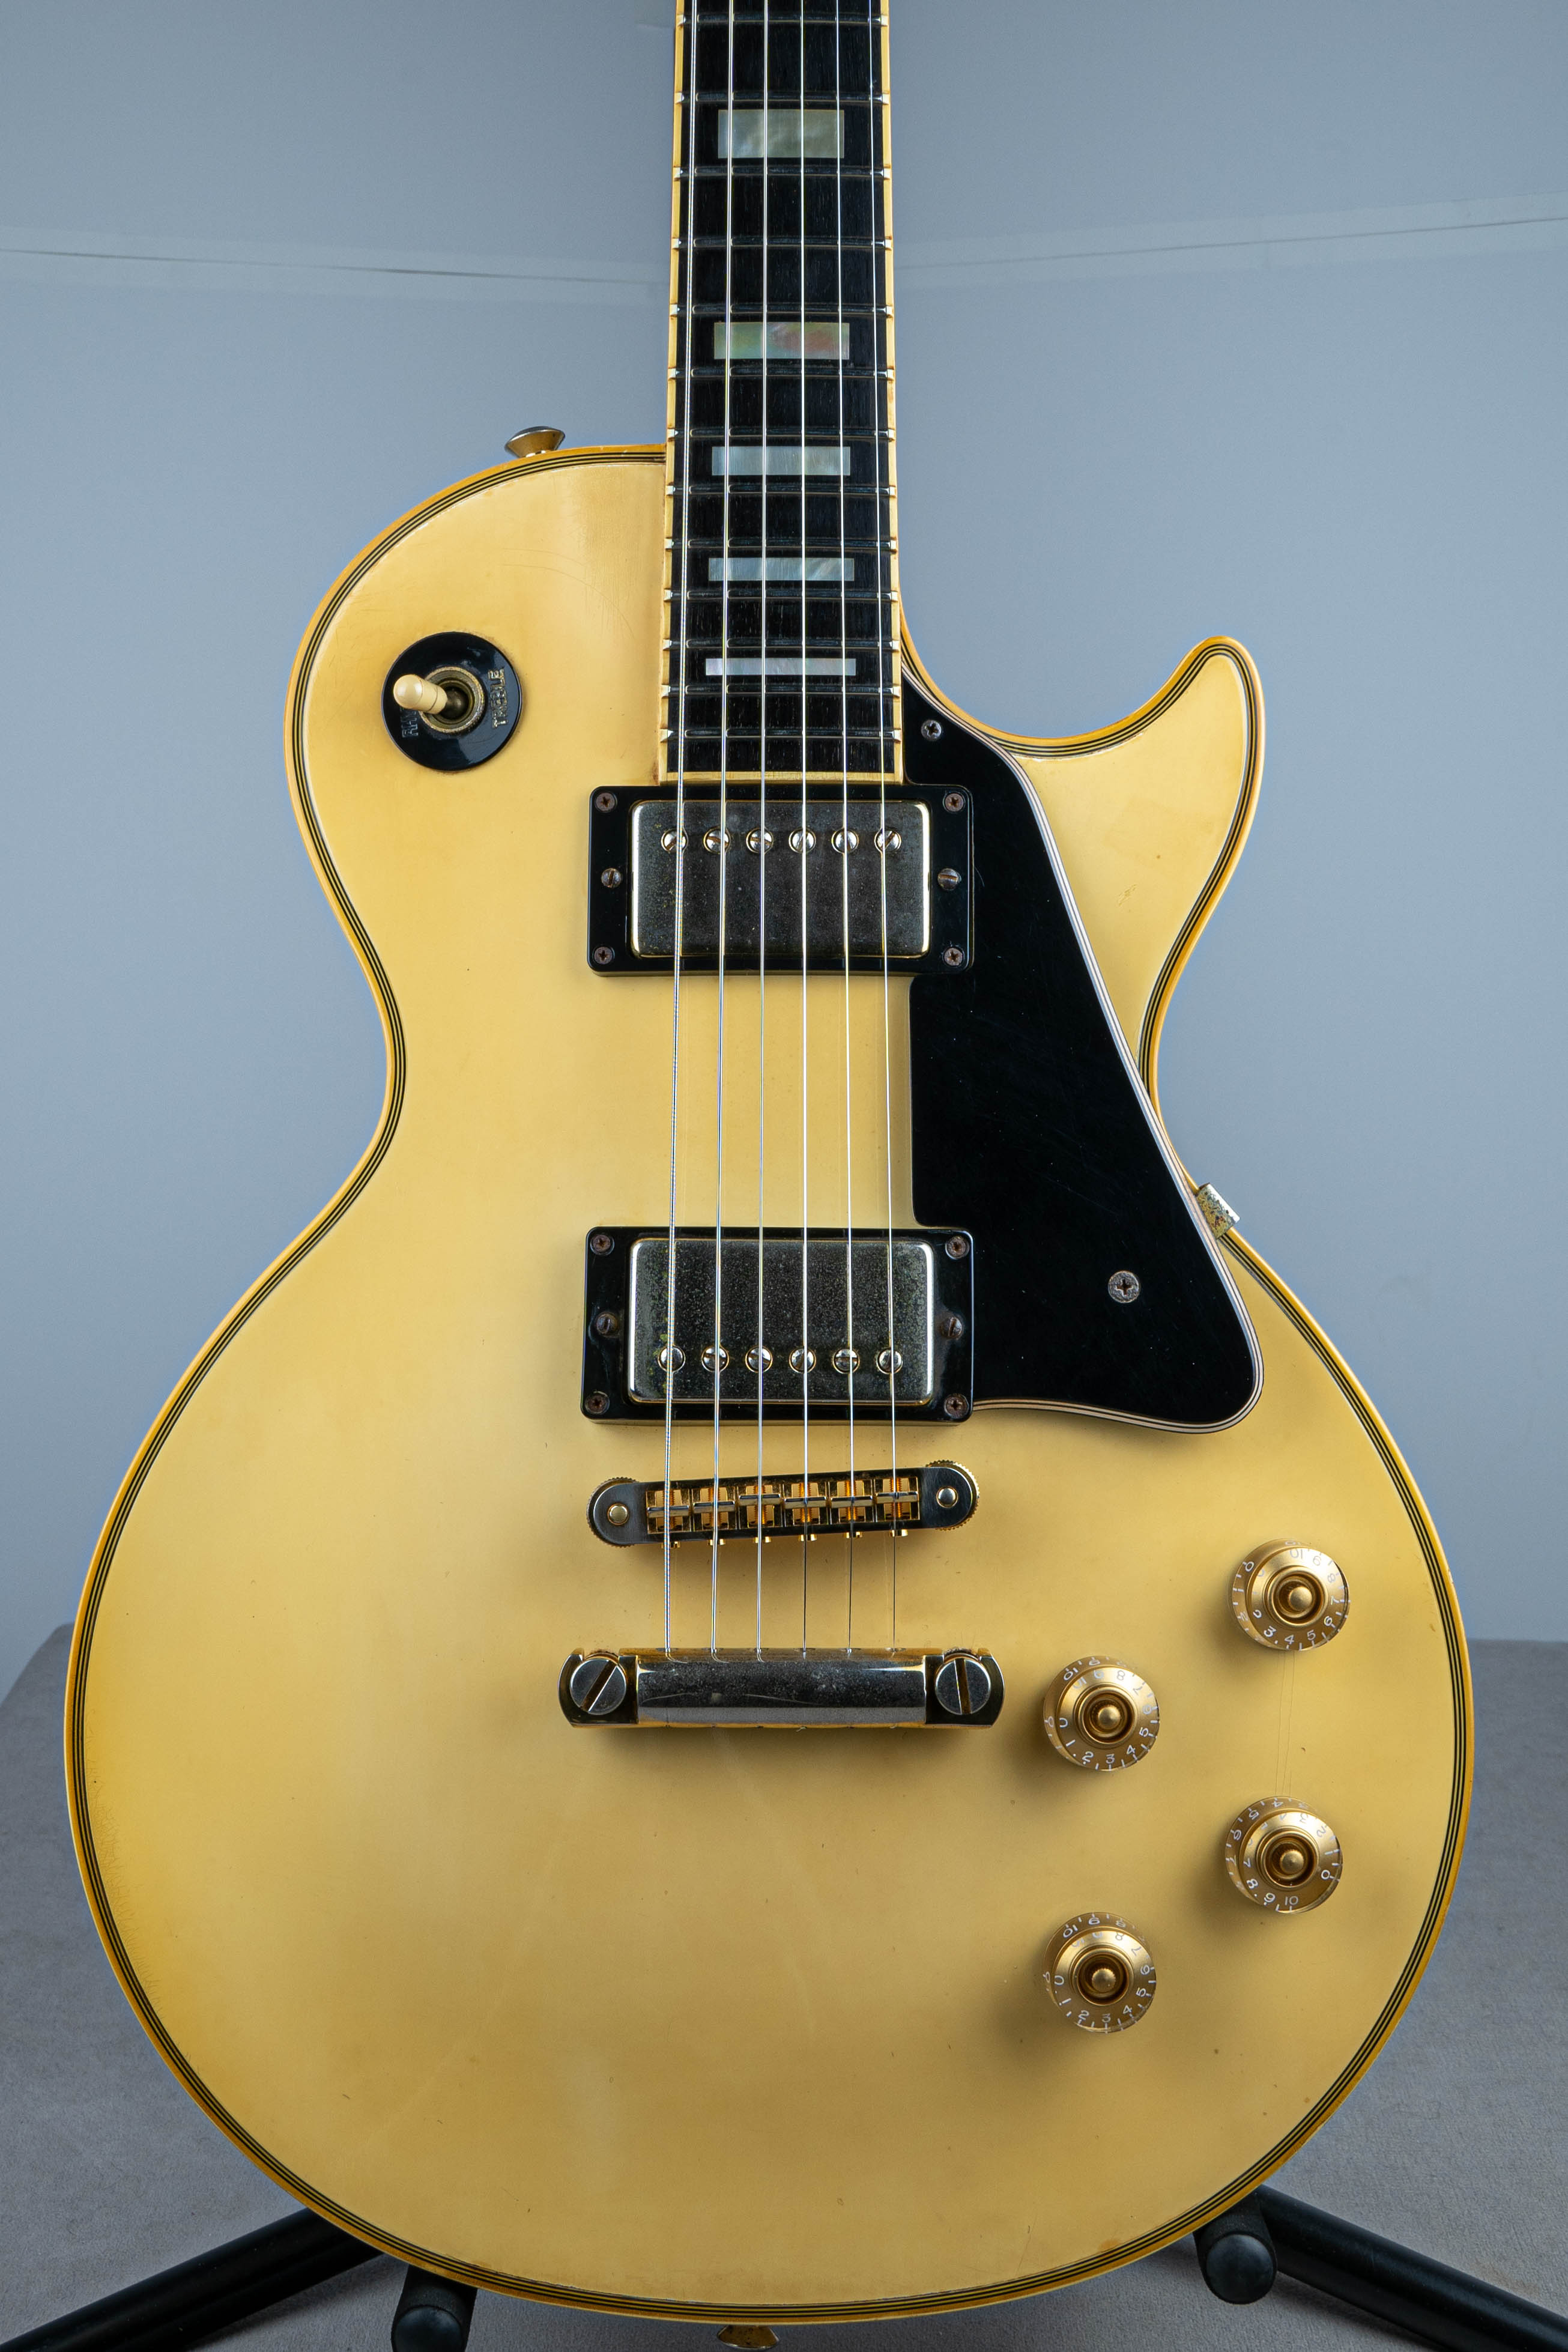 予約早割Gibson Les Paul Custom Alpine White 1998 ギブソン レスポール カスタム ホワイト エボニー指板 フレット交換あり 良品中古 希少 ギブソン